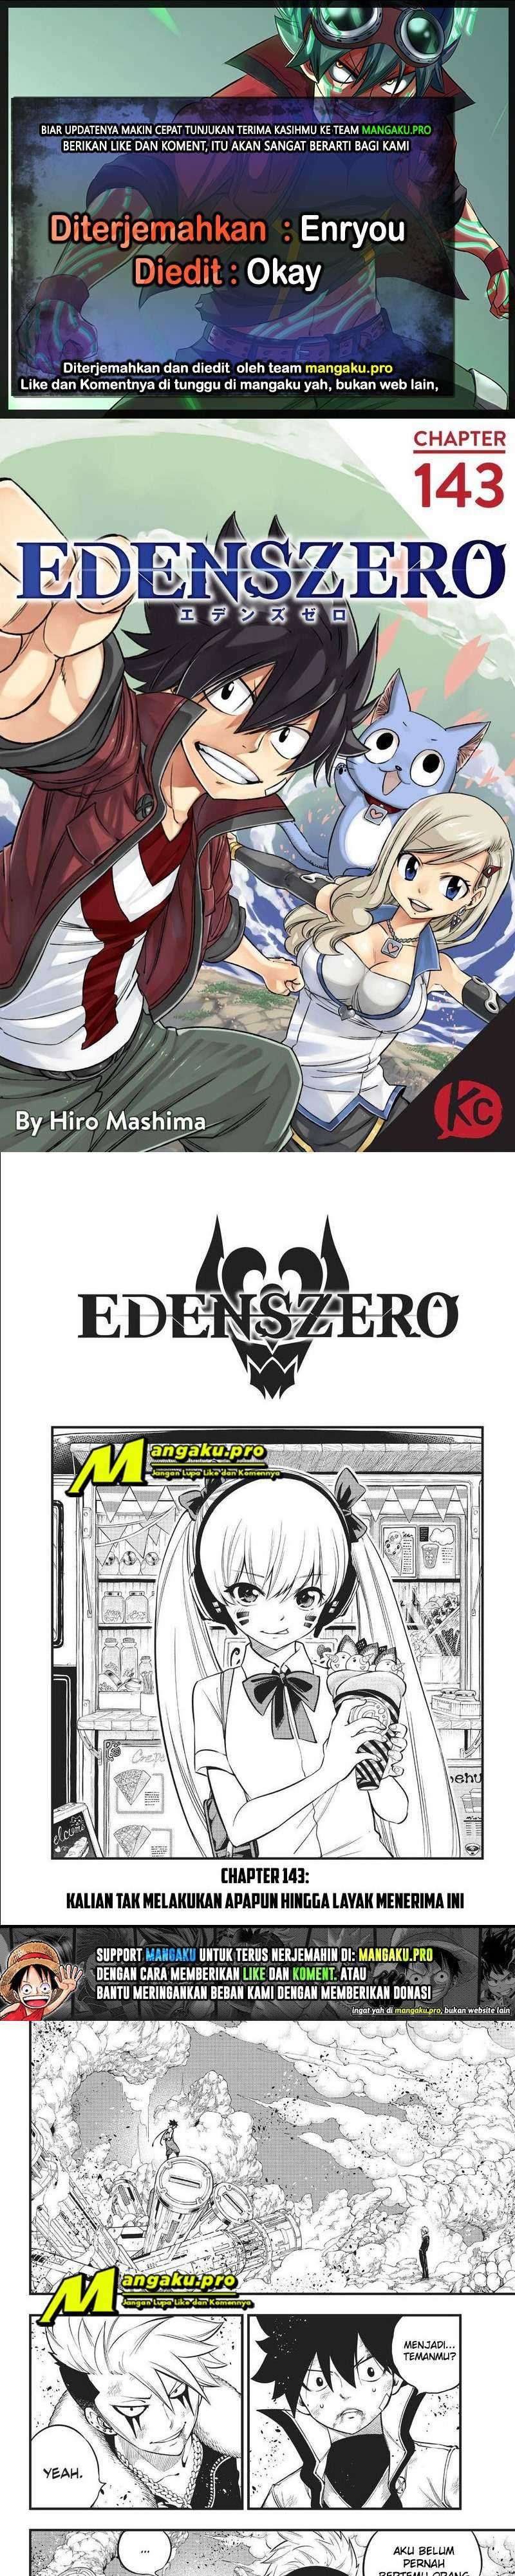 Eden's Zero Chapter 143 1